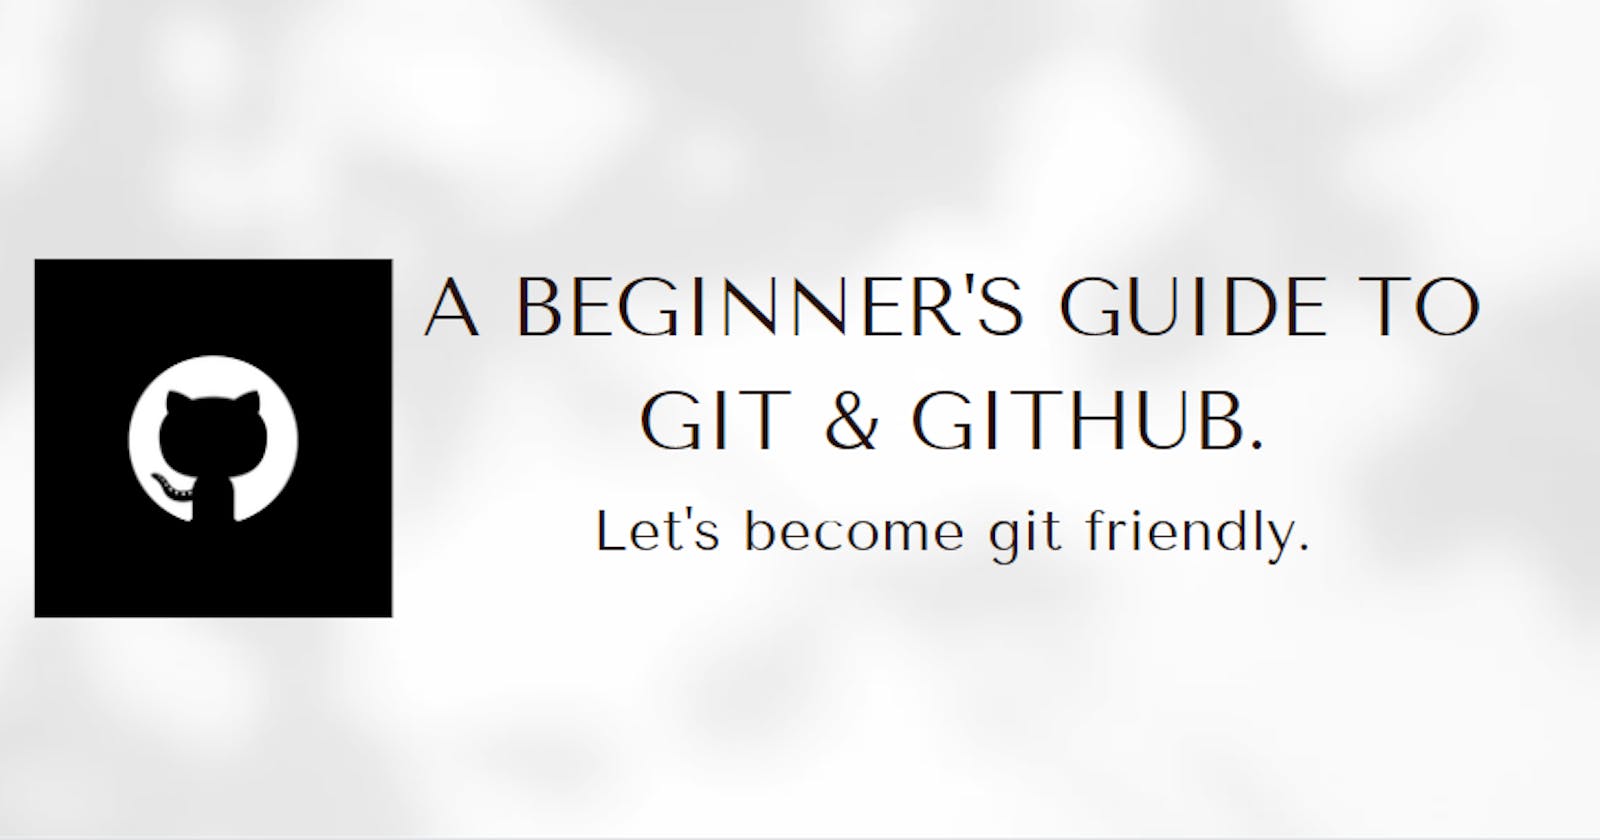 A Beginner's Guide To GIT & GITHUB